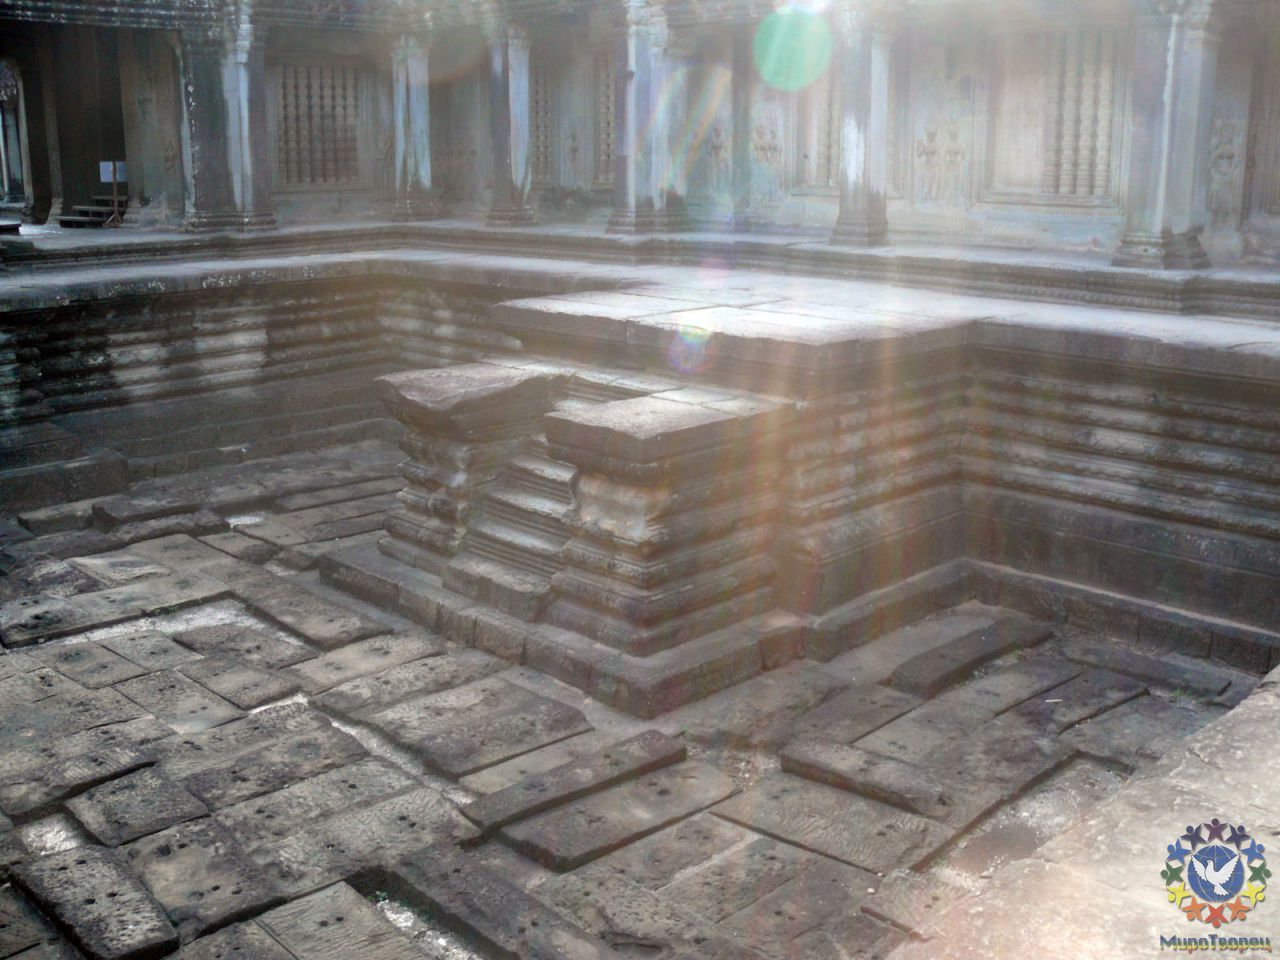 По четырем сторонам света от центральной башни Ангкор Вата расположены 4 ритуальных водоема. В сезон дождей они набираются водой, стекающей с крыш башень по специально предусмотренным желобам. Несколько раз в год здесь проводили службы и ритуалы исцеления страждущих. - Камбоджа декабрь 2010г.